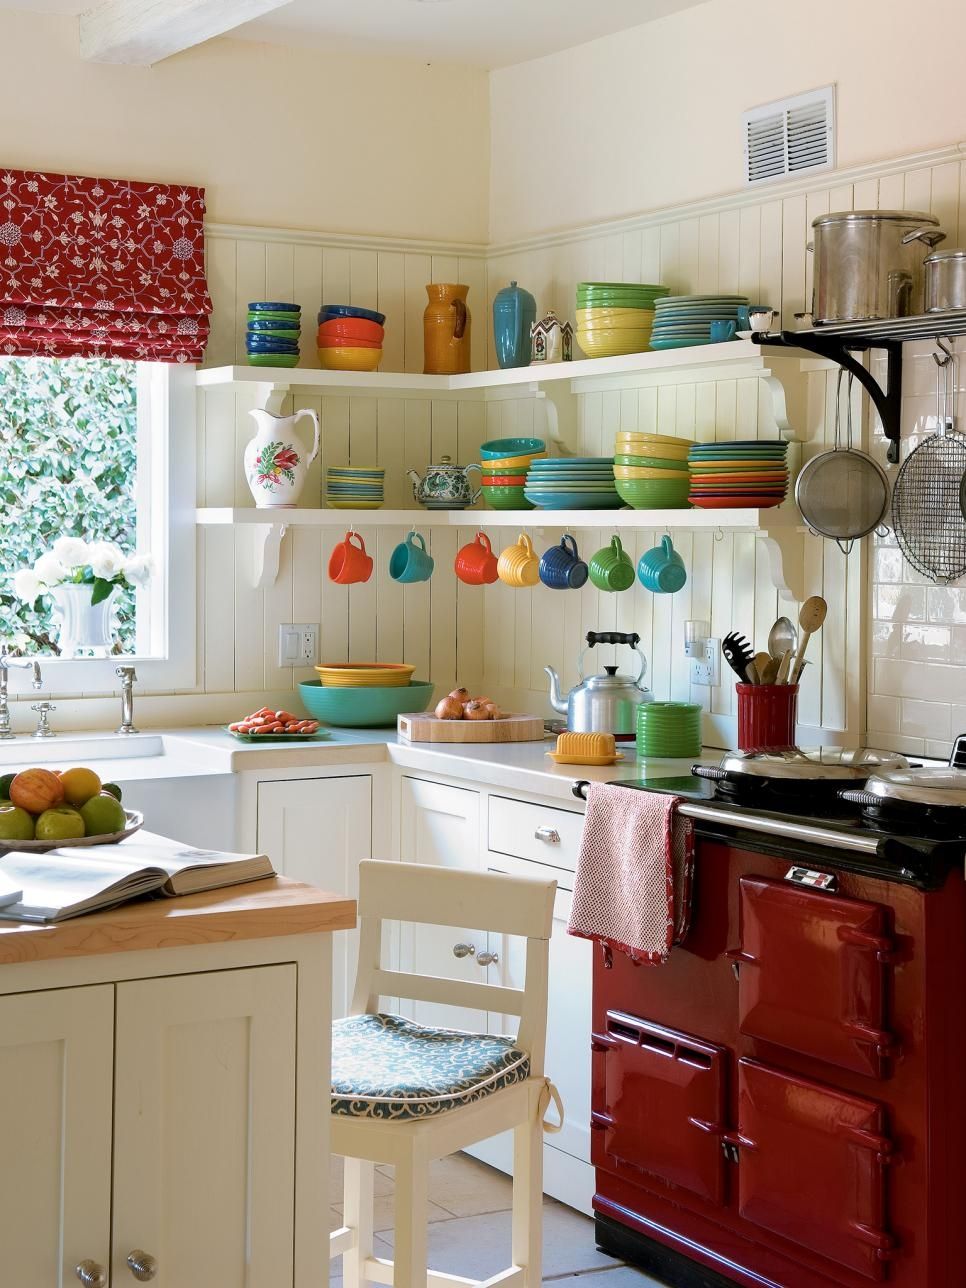 Λευκό εσωτερικό χώρο κουζίνας με αρμονικό συνδυασμό χρωμάτων